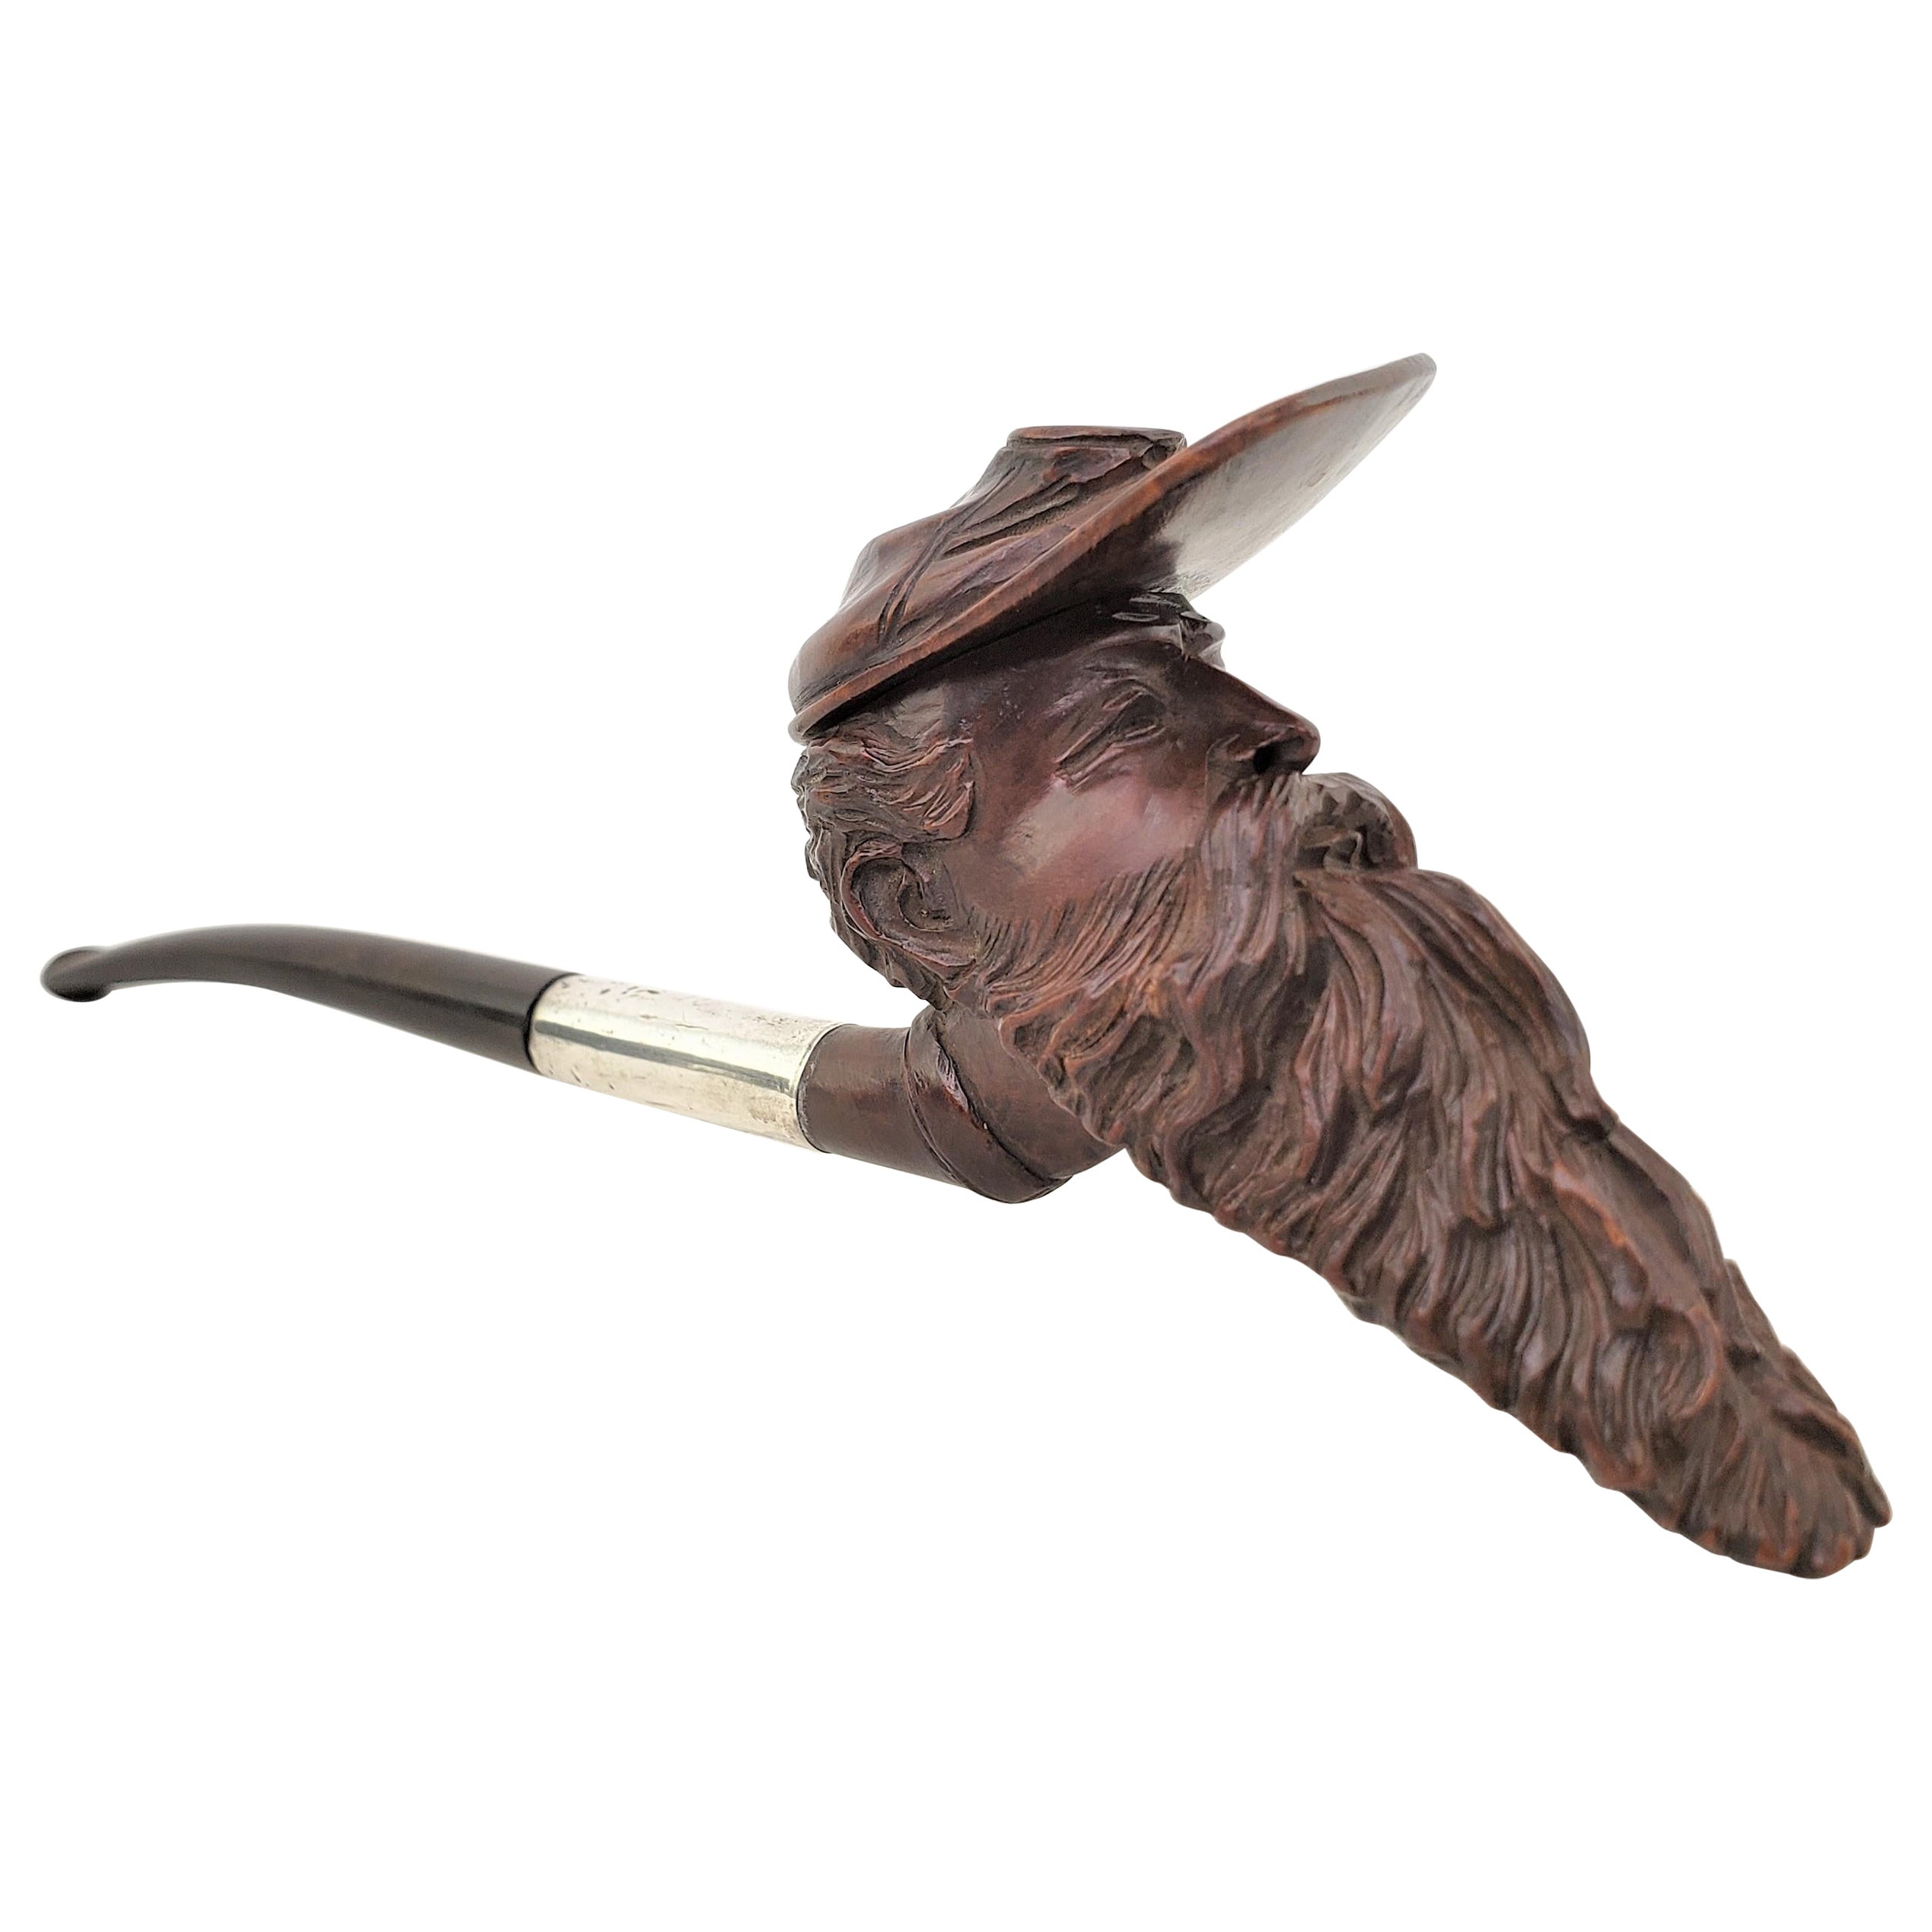 Ancienne pipe à fumer figurative en bois dur sculptée à la main, de style soldat confédéré